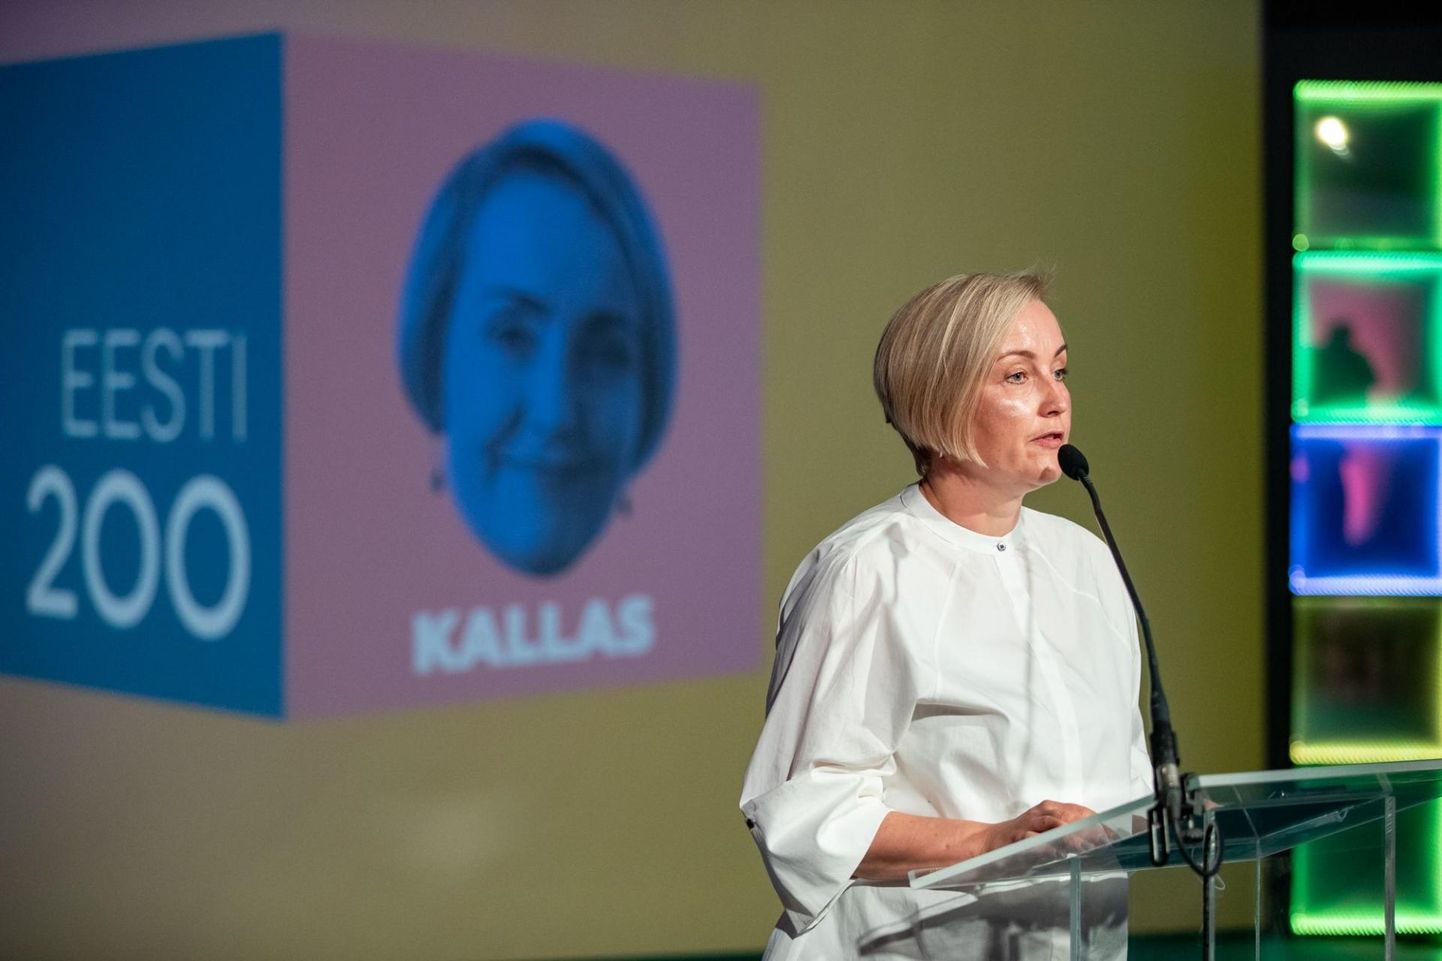 Eesti 200 juhatuse esimees Kristina Kallas oktoobris toimunud erakonna üldkogul. 